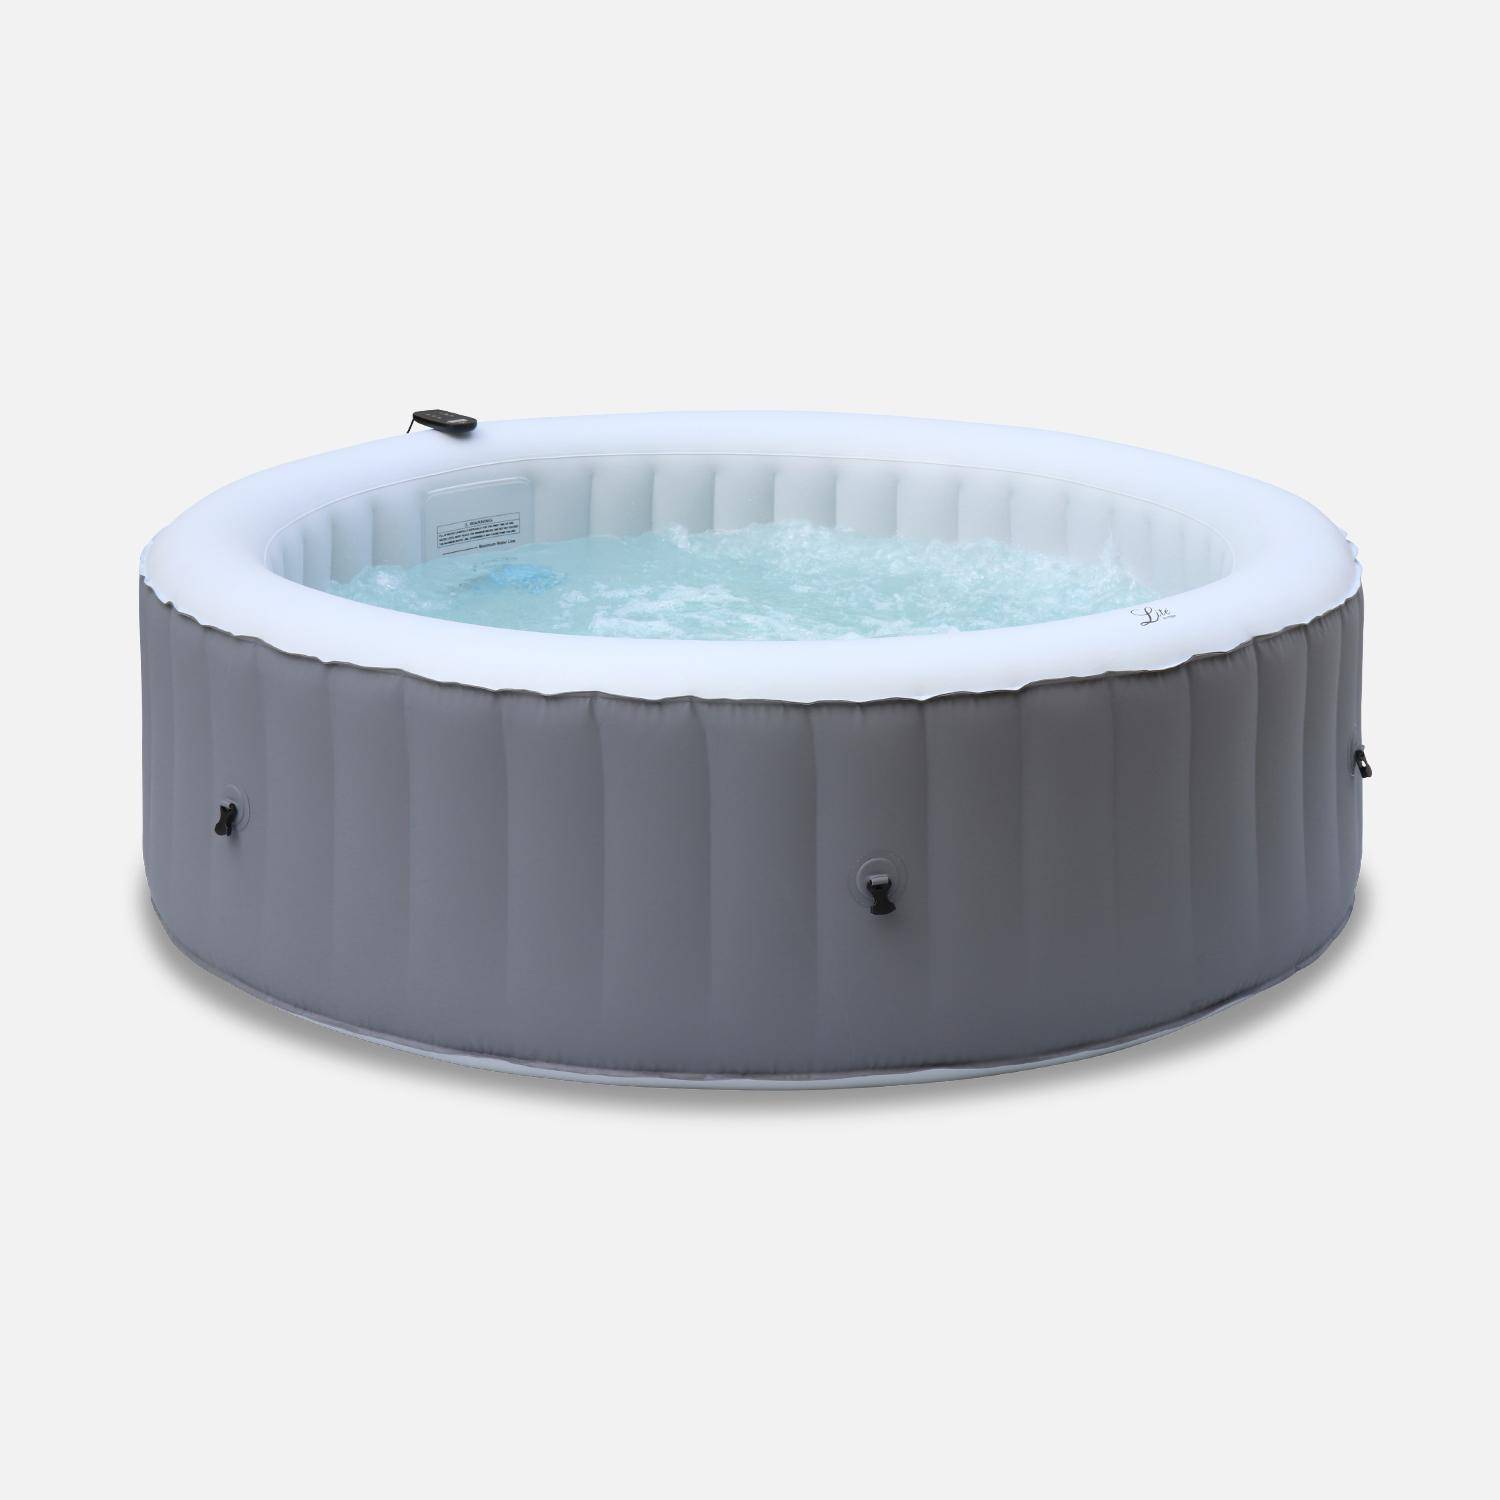 MSPA grijze ronde opblaasbare spa voor 6 personen met antivriessysteem + cover en frame van geweven hars Photo2